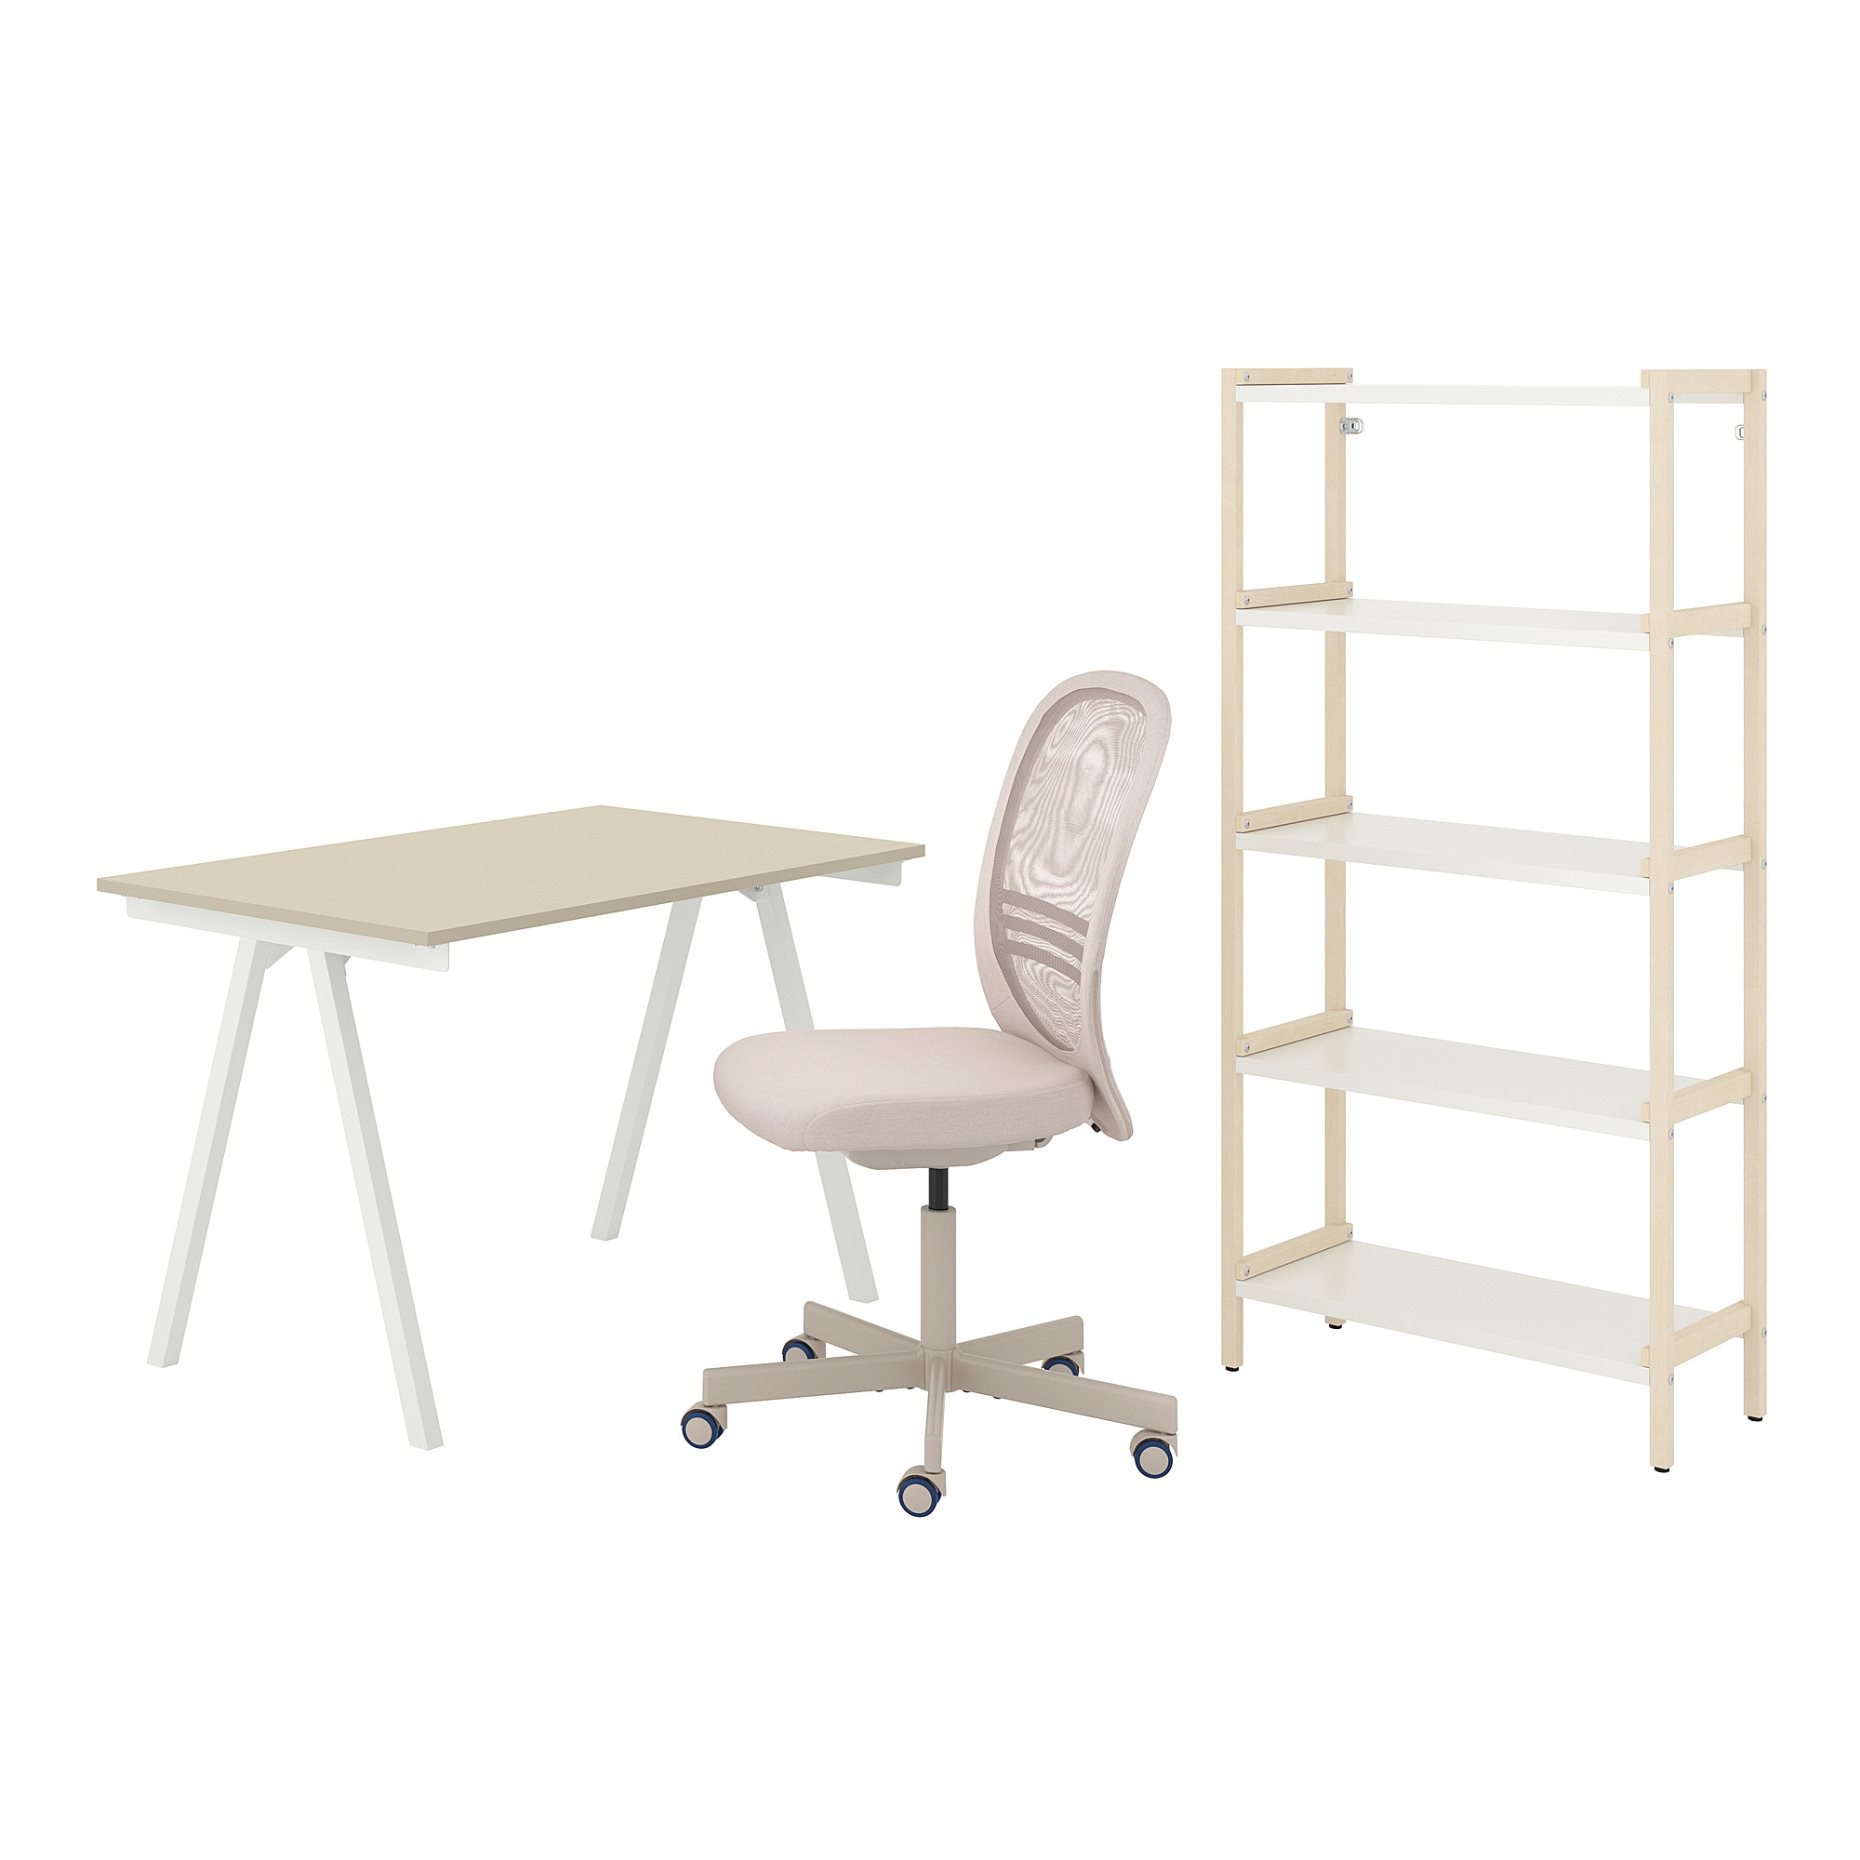 TROTTEN/FLINTAN/EKENABBEN, desk and storage combination with swivel chair, 794.368.29